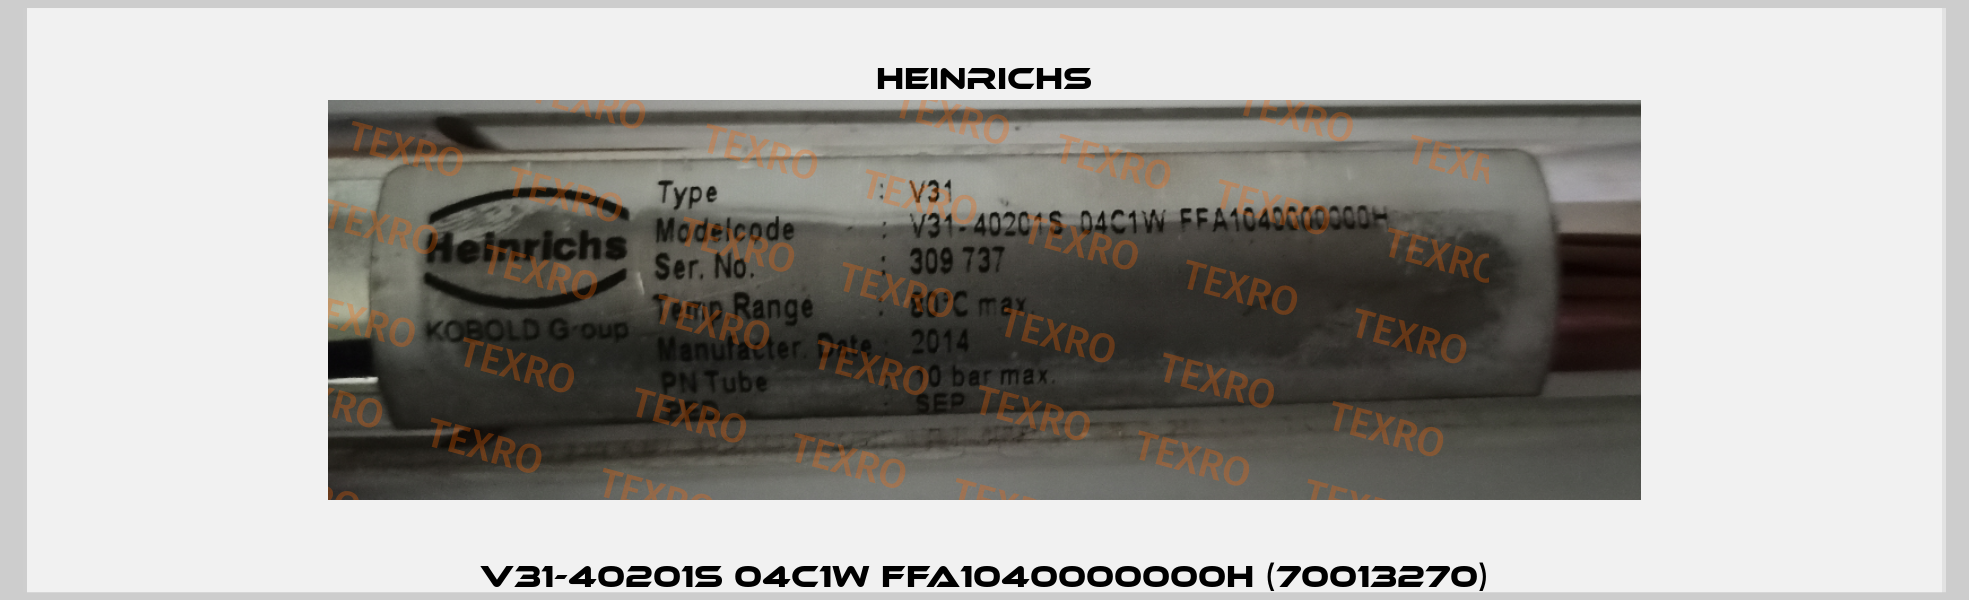 V31-40201S 04C1W FFA1040000000H (70013270) Heinrichs